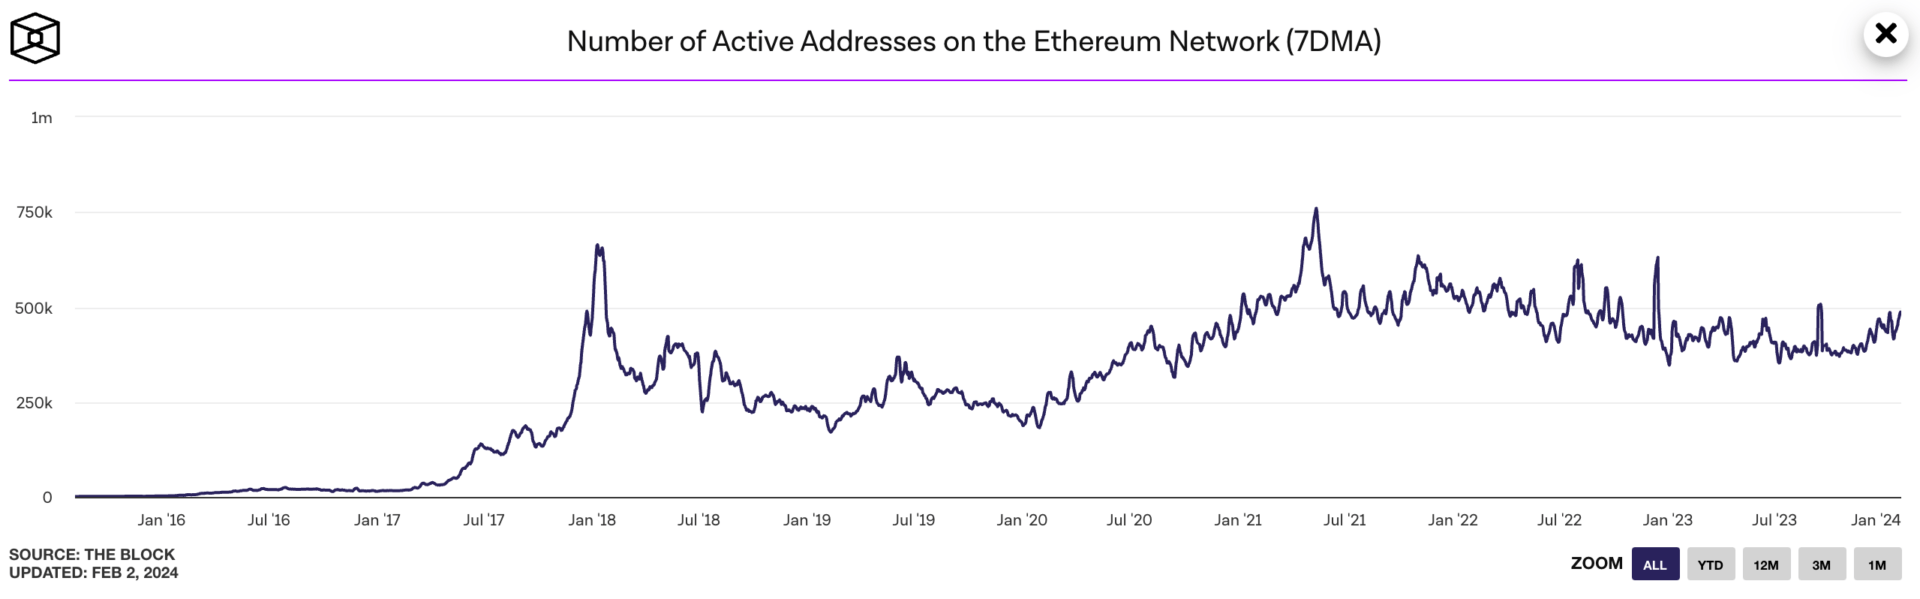 Le nombre d'adresses actives sur le réseau Ethereum continue de grimper - 2 février 2024. 